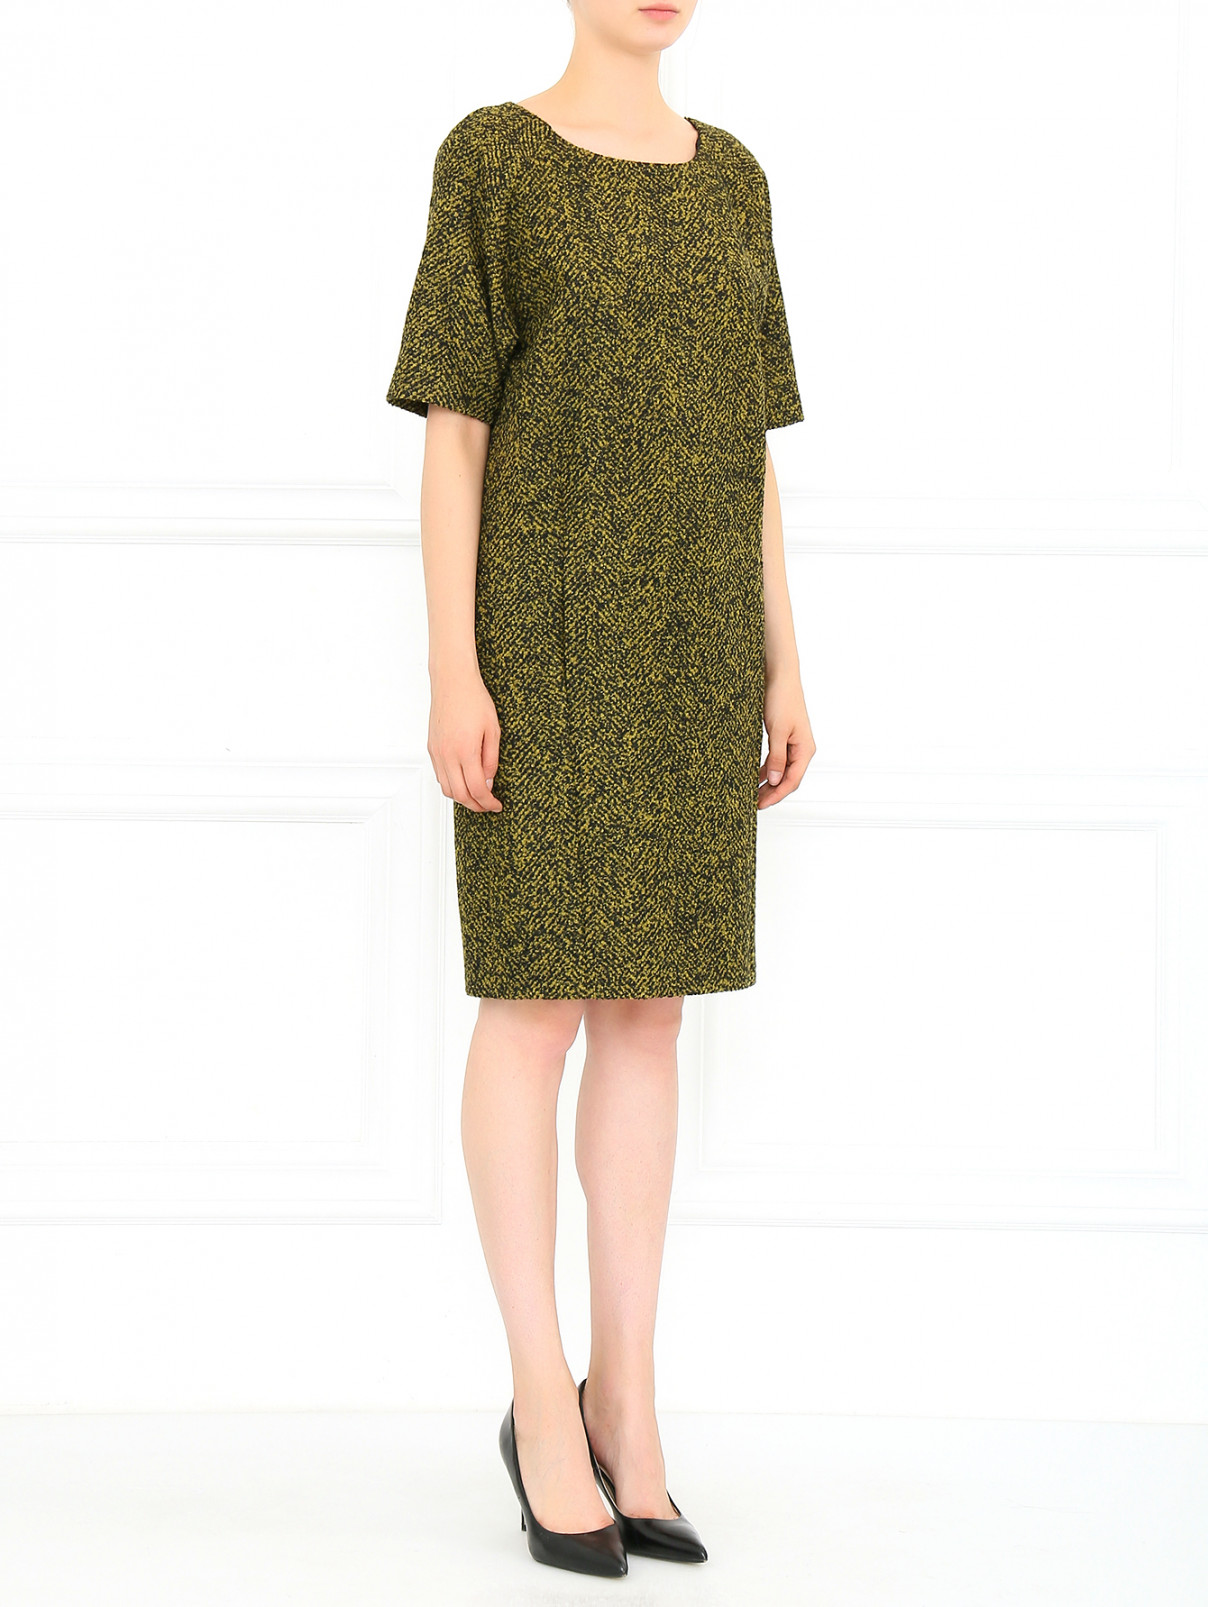 Платье свободного кроя с карманами Michael Kors  –  Модель Общий вид  – Цвет:  Зеленый